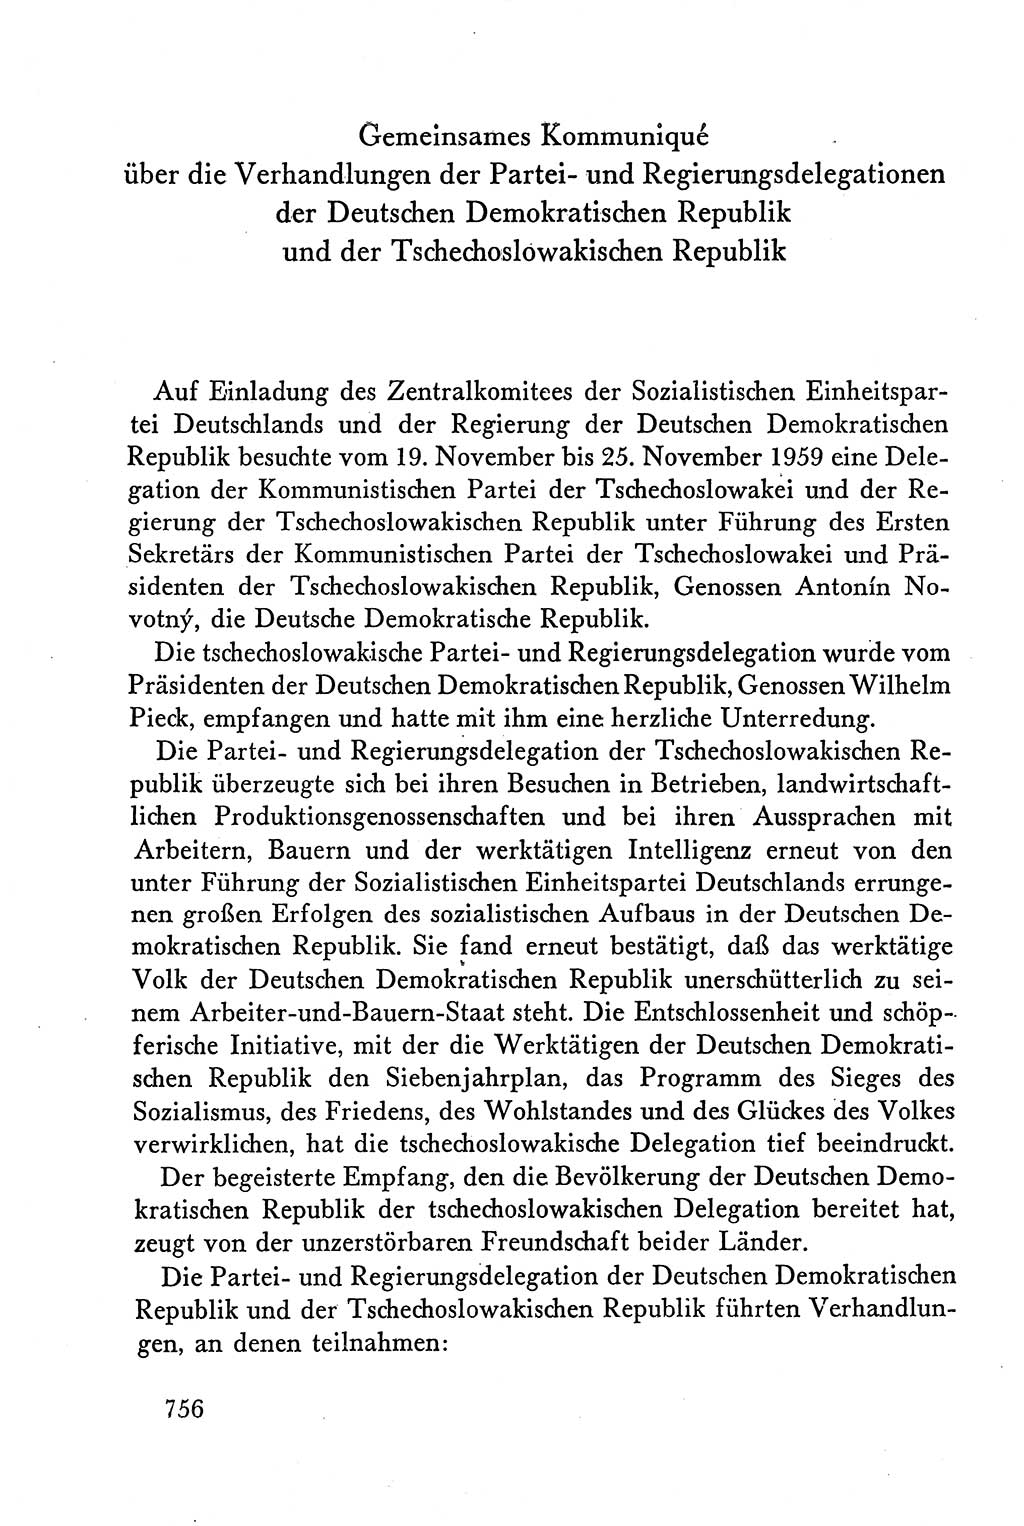 Dokumente der Sozialistischen Einheitspartei Deutschlands (SED) [Deutsche Demokratische Republik (DDR)] 1958-1959, Seite 756 (Dok. SED DDR 1958-1959, S. 756)